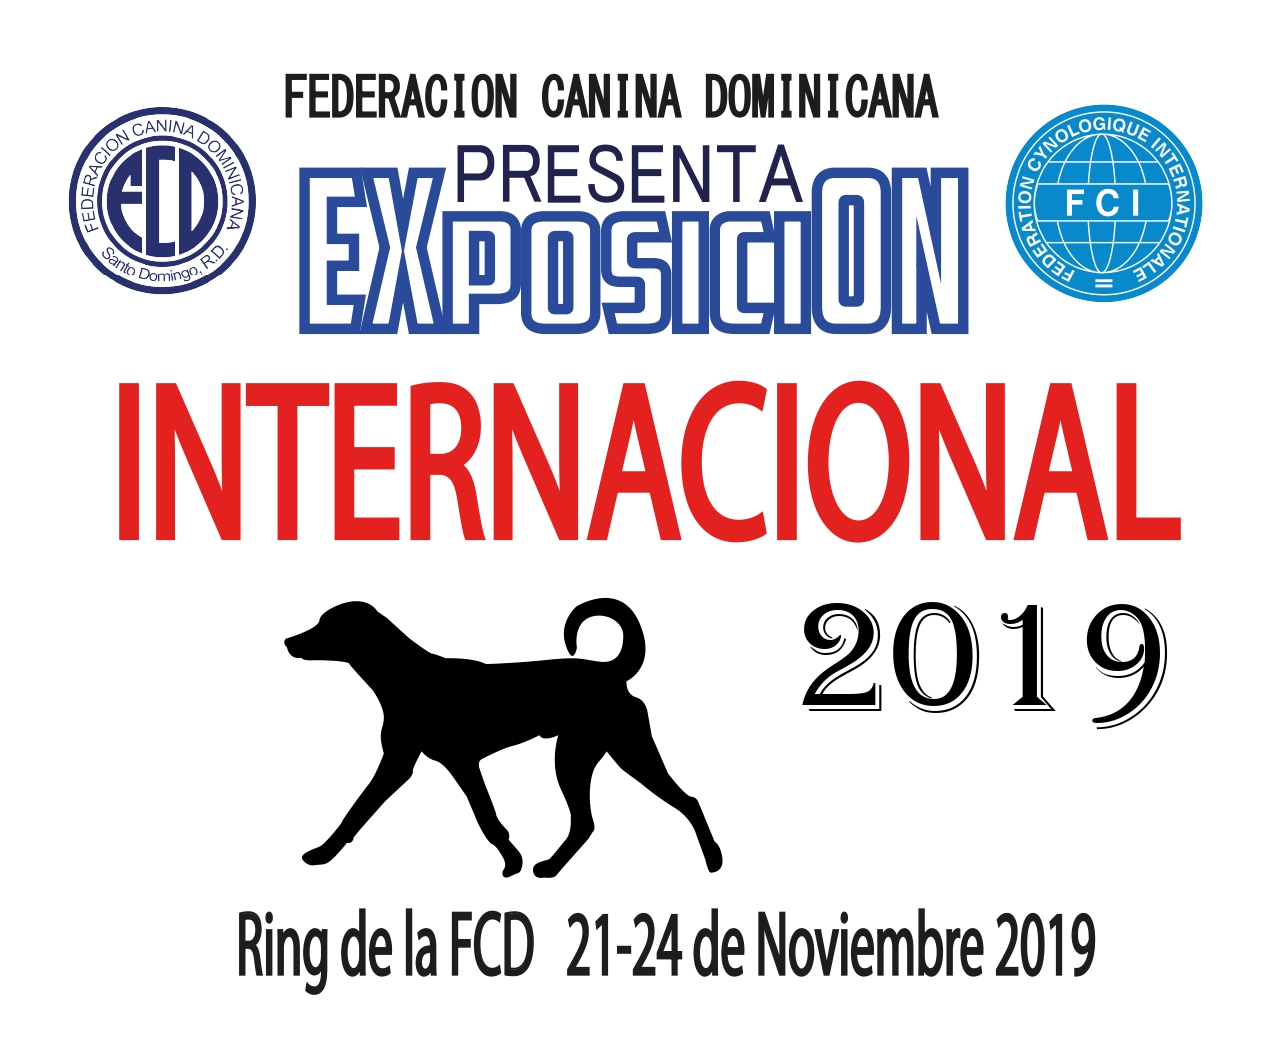 Federación Canina Dominicana anuncia Exposición Canina Internacional 2019